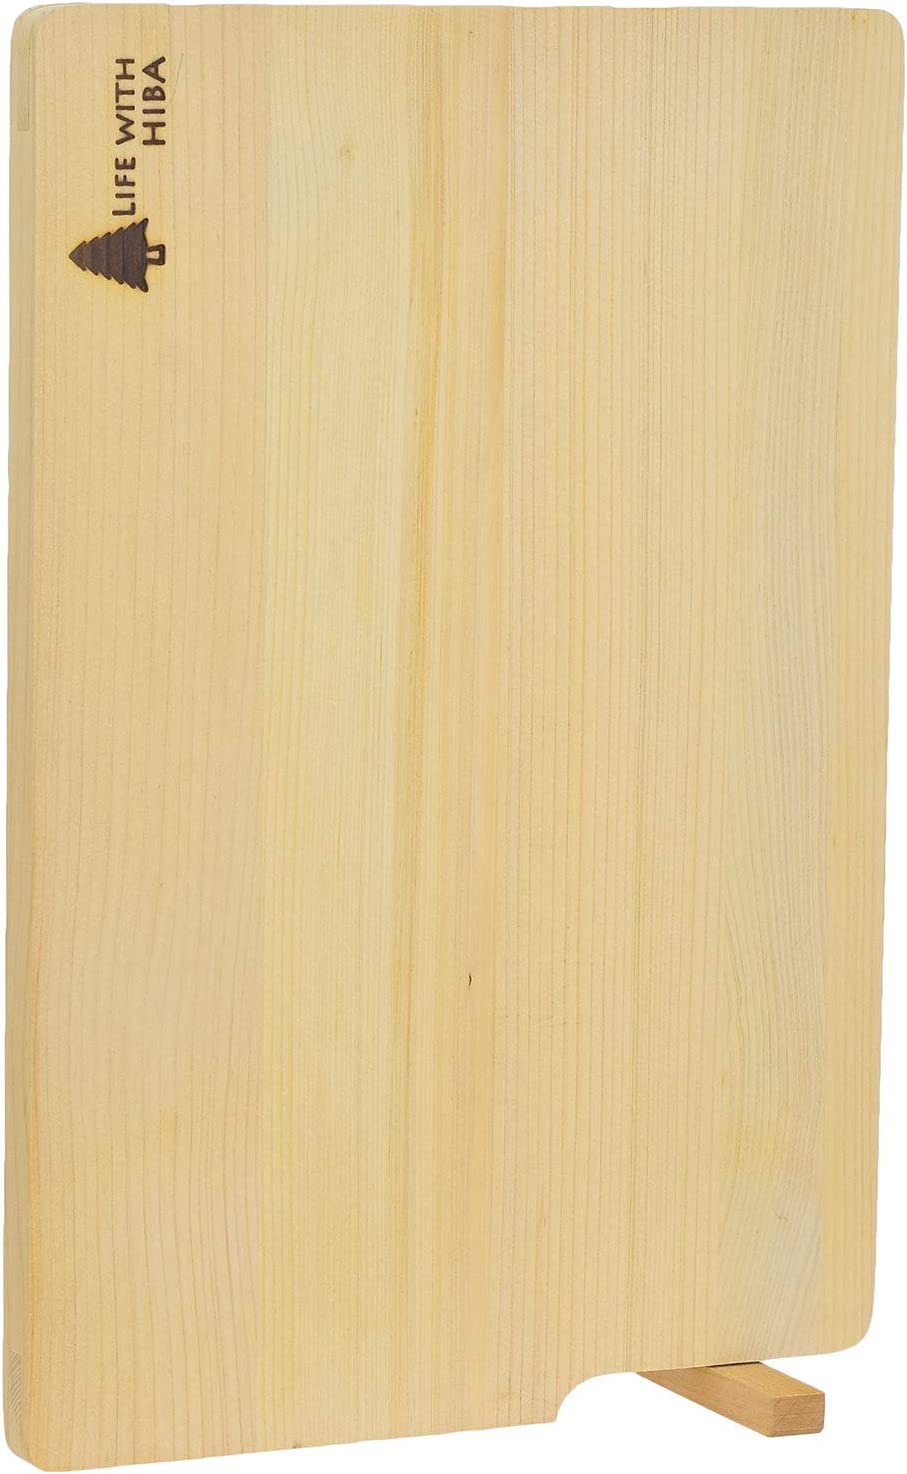 ウメザワ 木製まな板 青森ひば スタンド付き 中 32×22×1.5cm 日本製